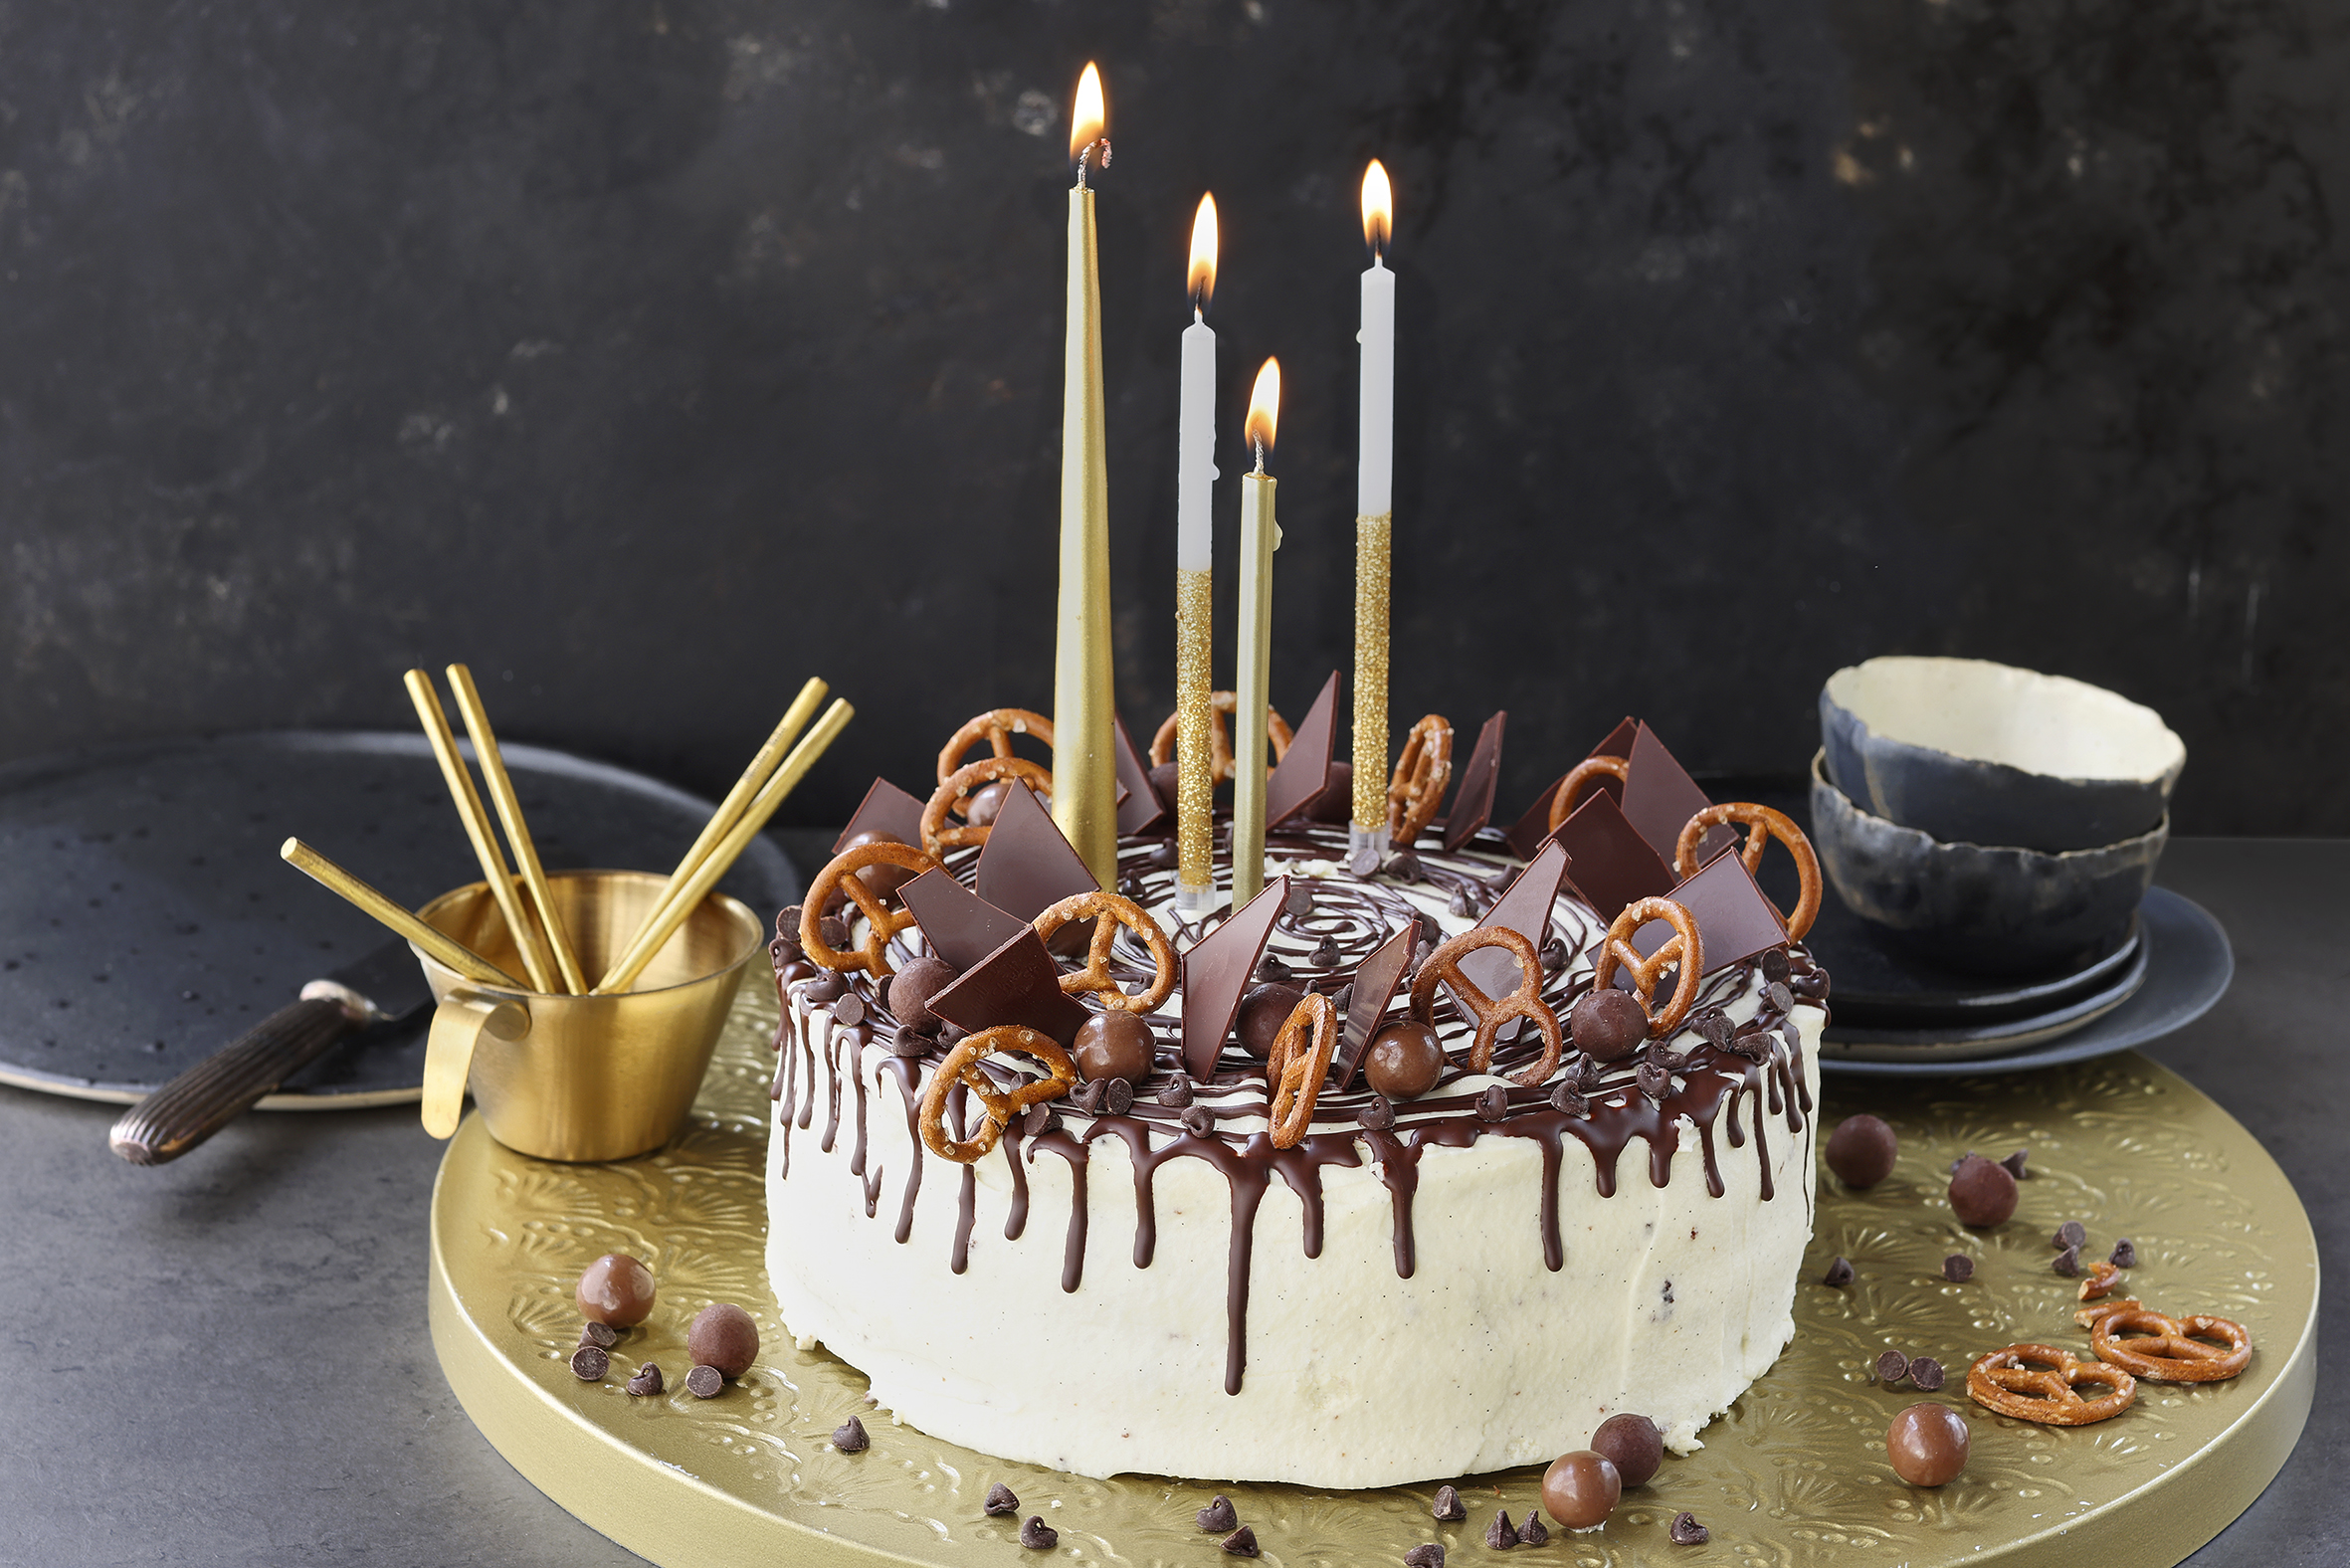 Gâteau d'anniversaire vert boules en chocolat  Boule chocolat, Chocolat,  Gateau anniversaire